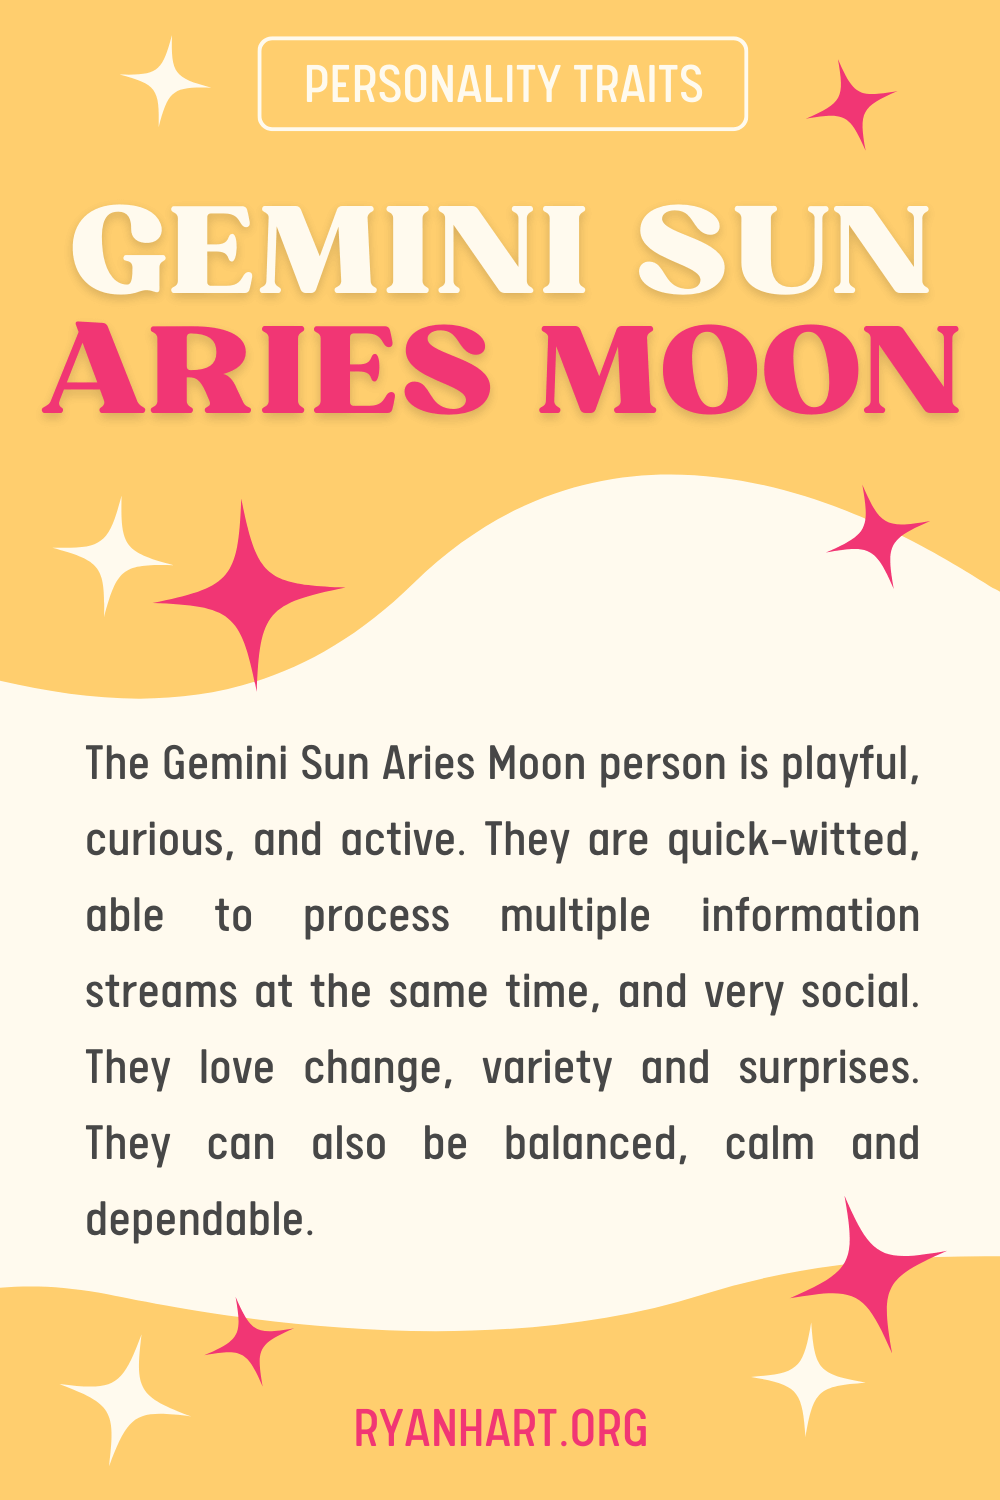  Gemini Sun Aries လ စရိုက်လက္ခဏာများ